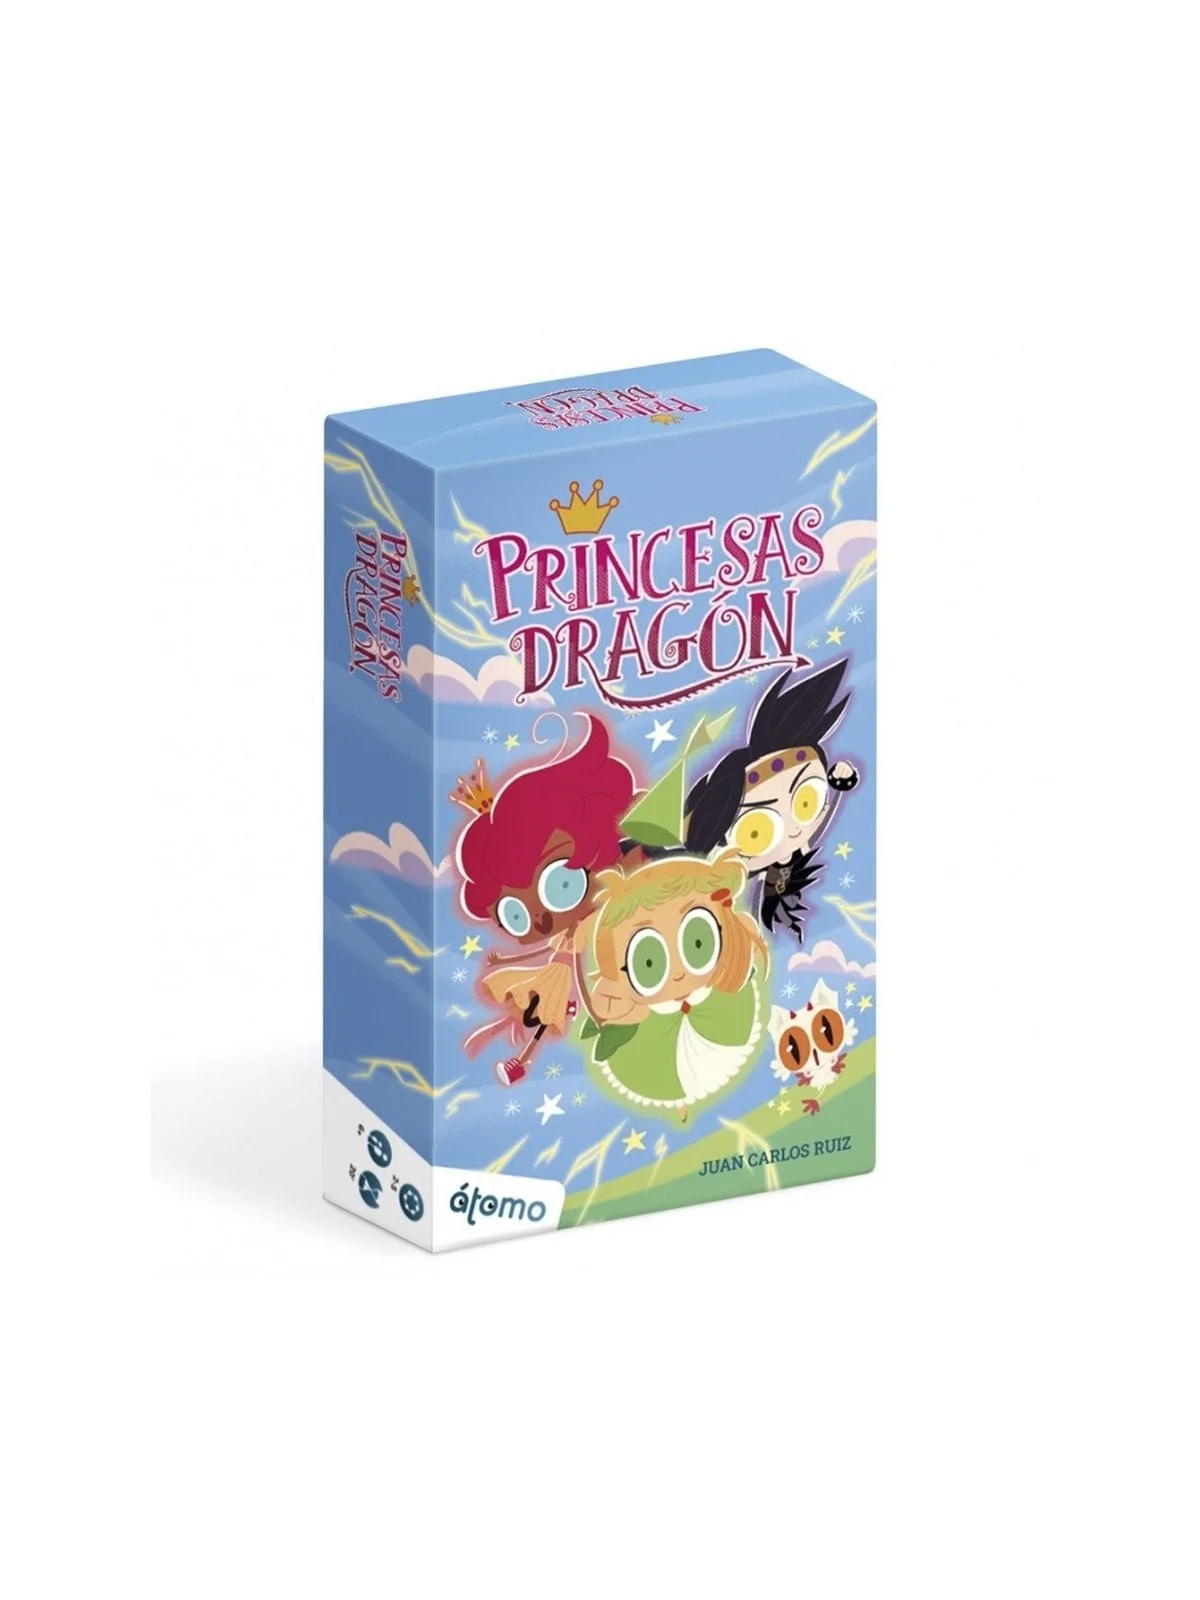 Comprar Princesas Dragón barato al mejor precio 15,00 € de Atomo Games